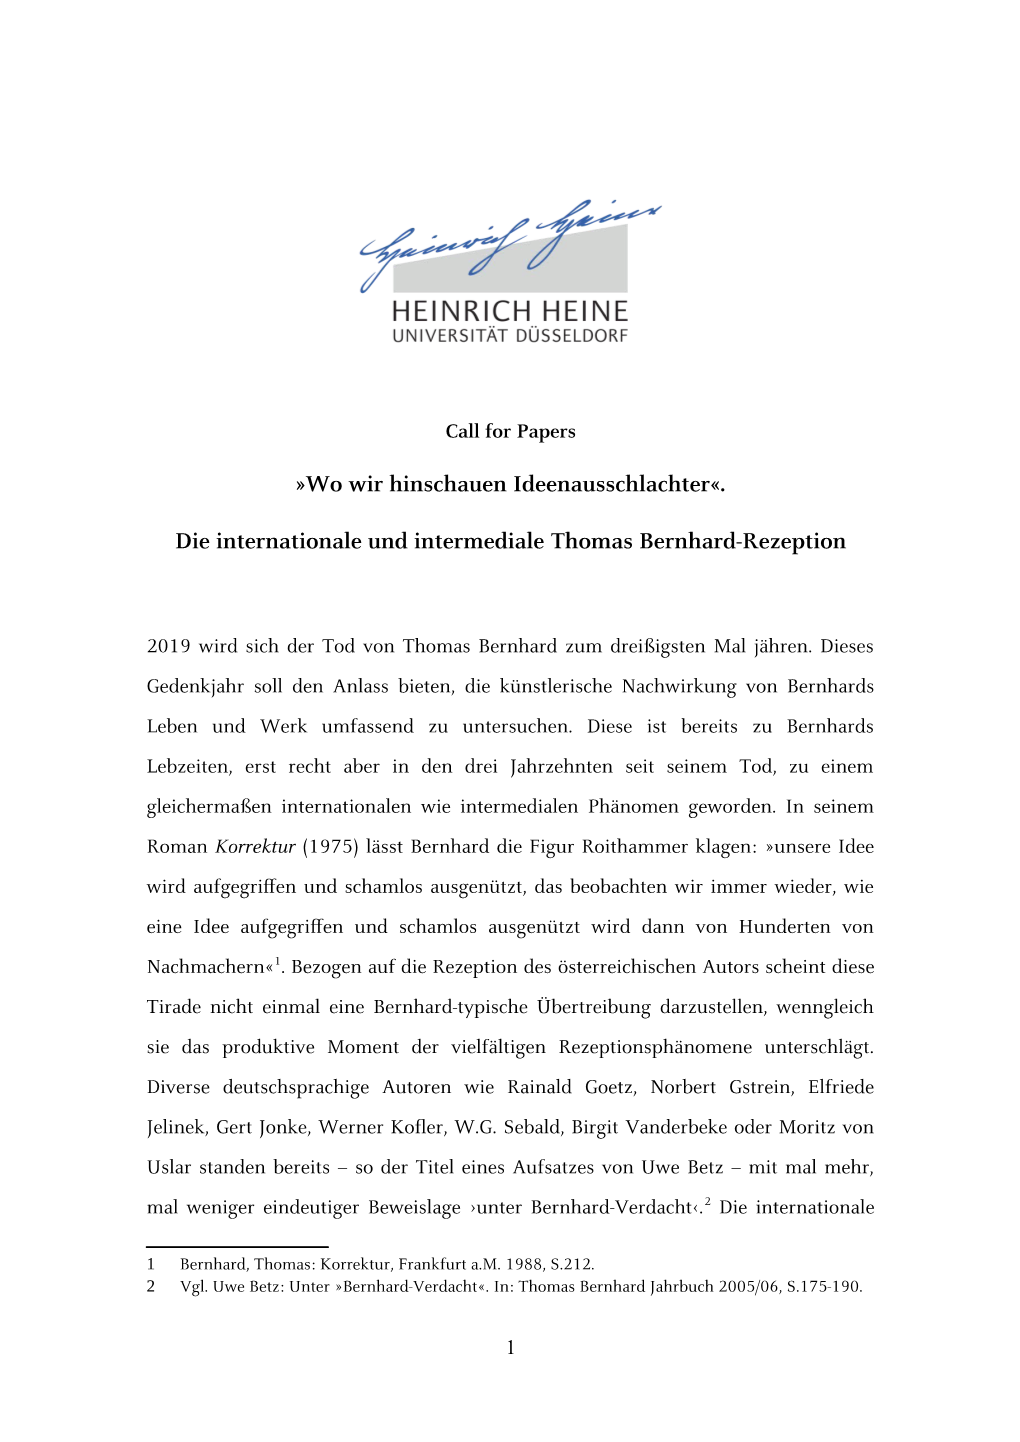 Die Internationale Und Intermediale Thomas Bernhard-Rezeption